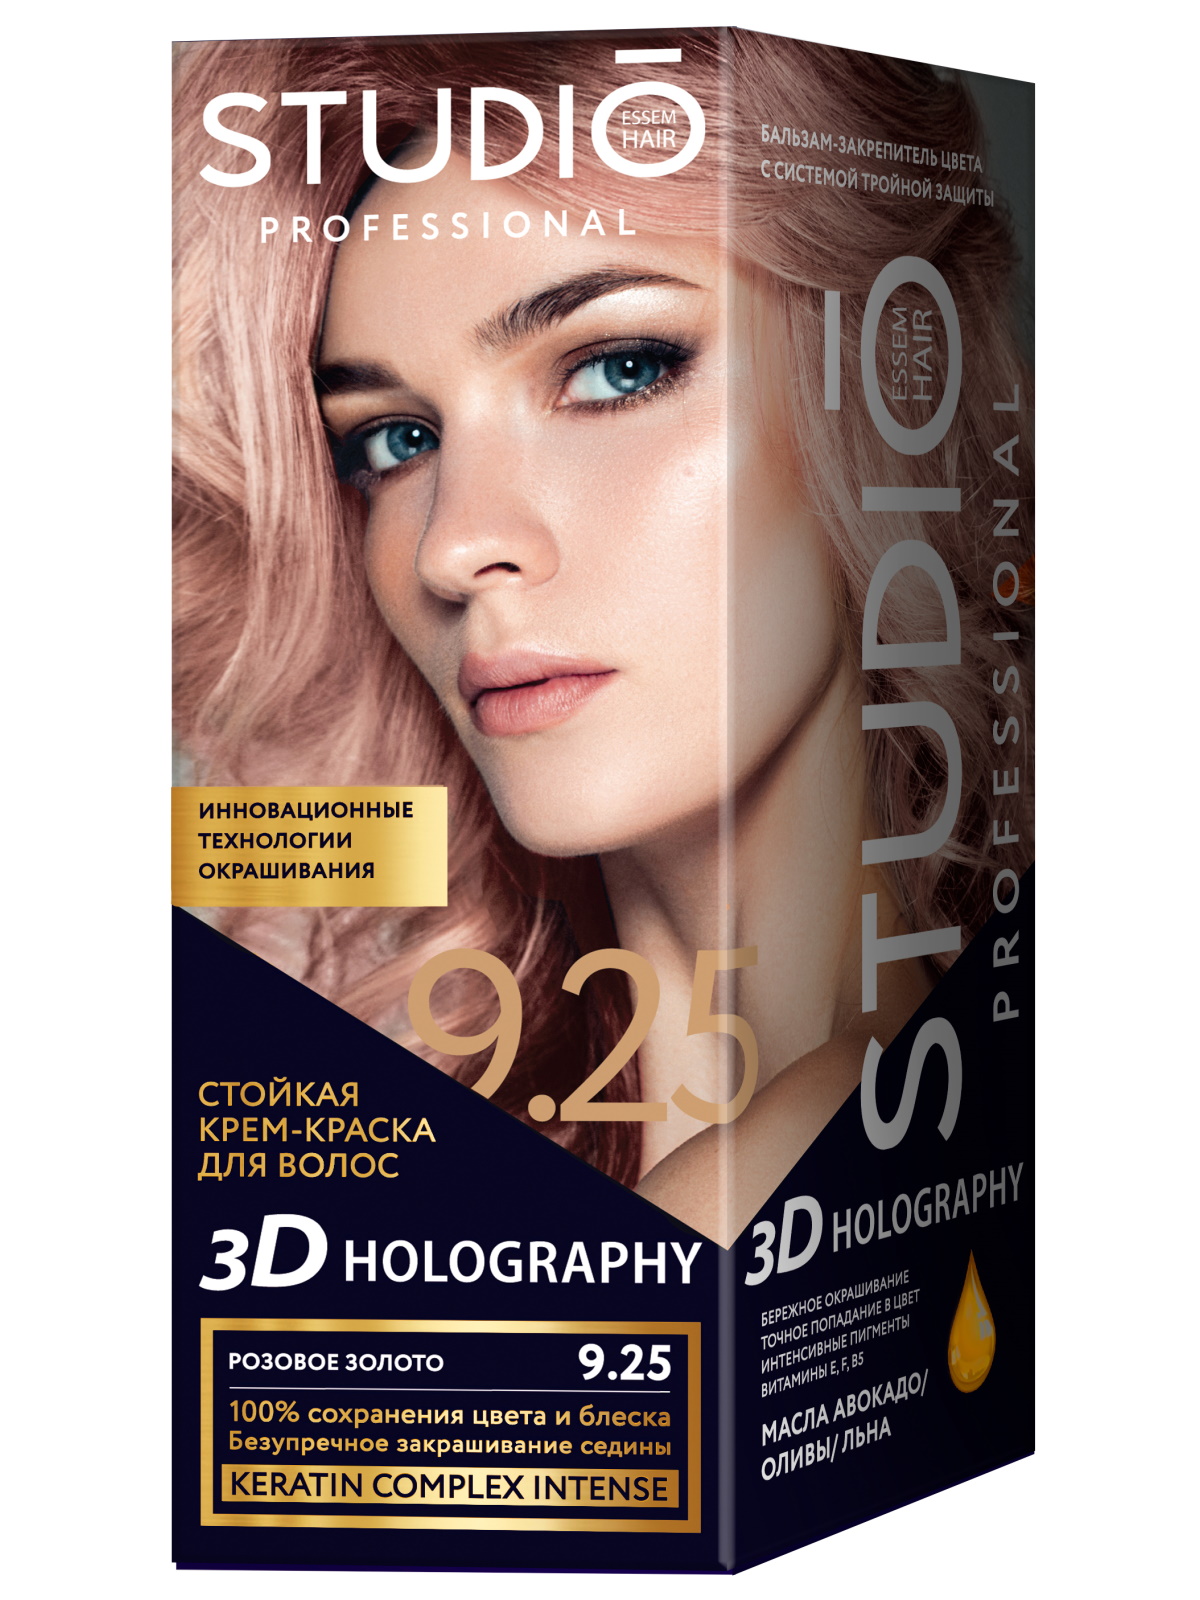 Комплект 3D HOLOGRAPHY для окрашивания STUDIO PROFESSIONAL 9.25 розовое золото 2*50+15 мл тарковский боже чувствую руку твою на затылке моём бурляев н